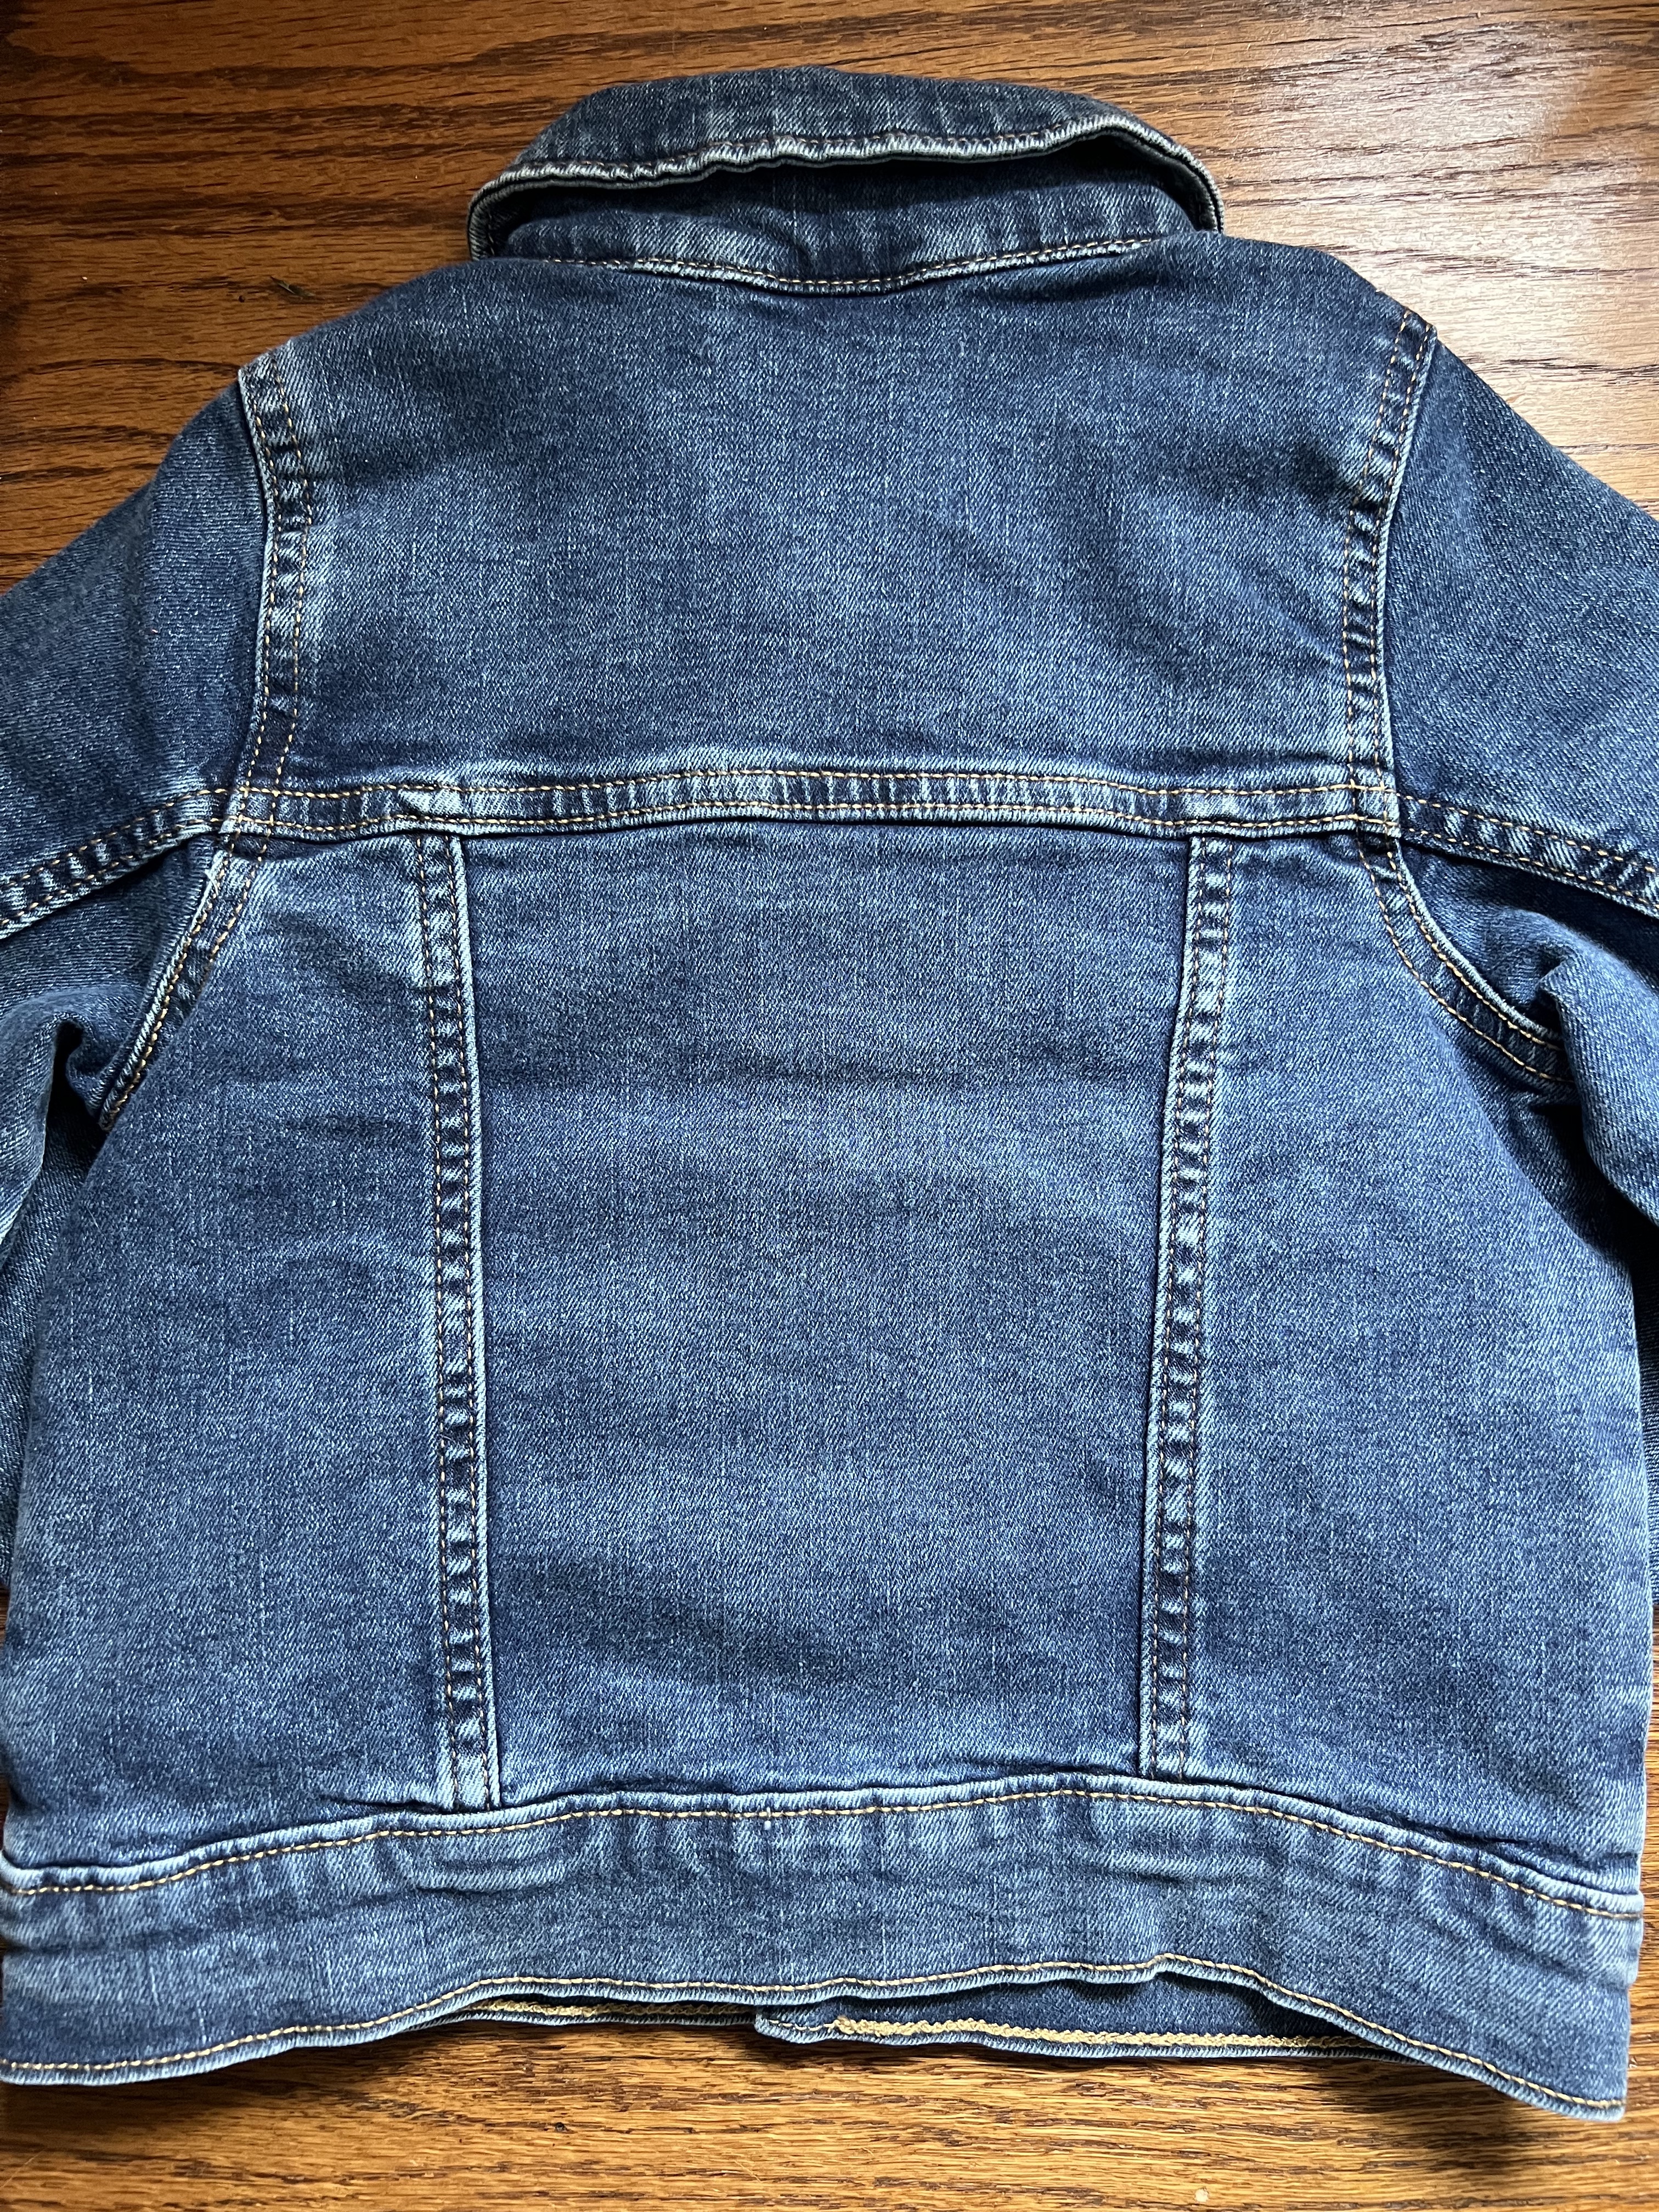 Custom Jean Jacket Patchwork Denim Jacket Quilted Jacket 